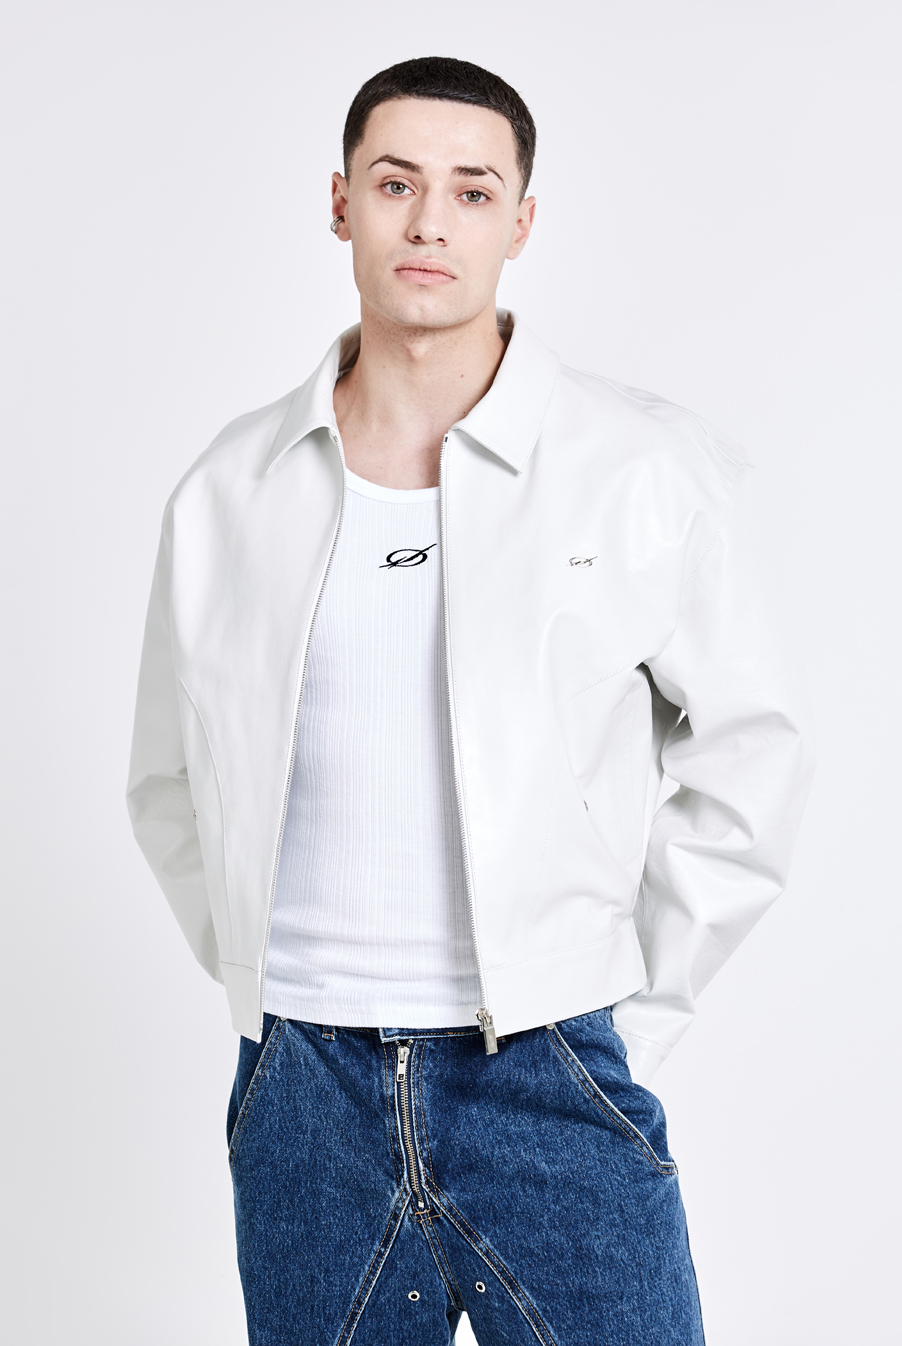 Bulky Leather Jacket - White